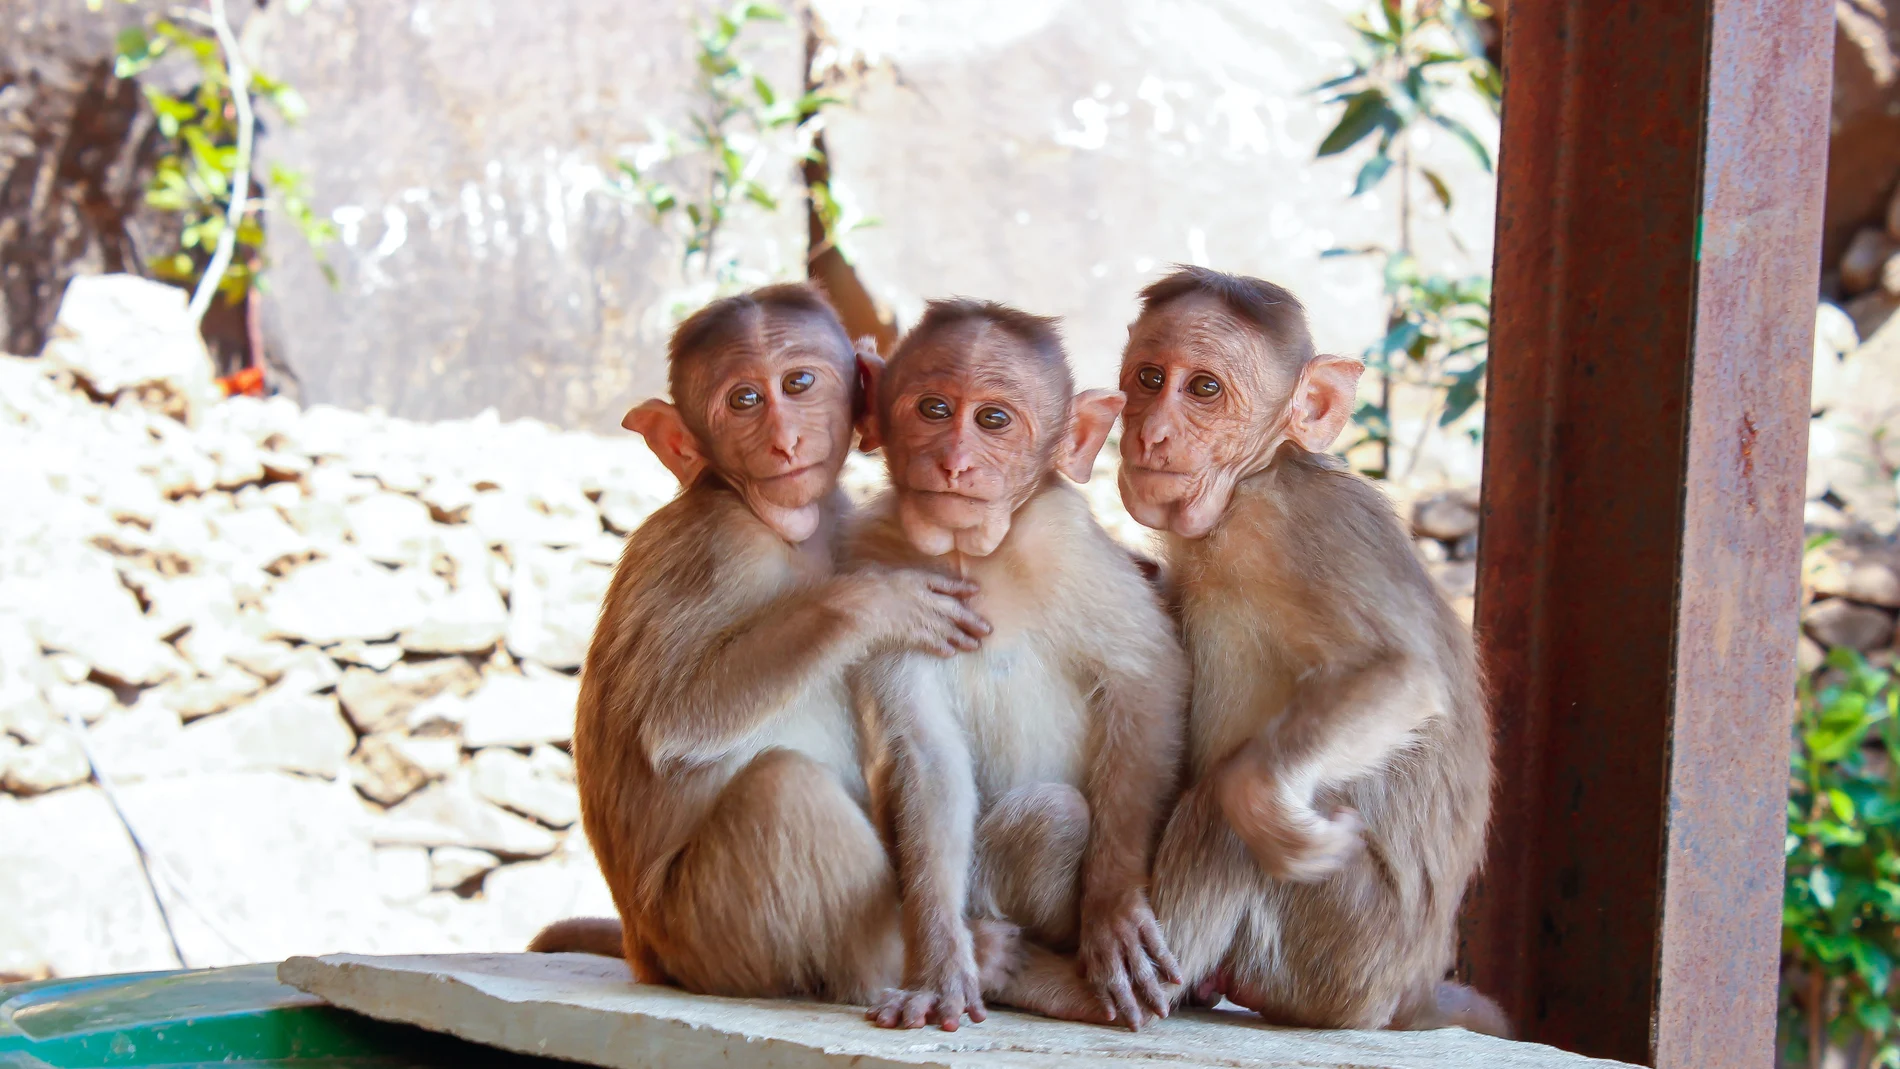 Viruela del mono: qué es, cómo se transmite y cuáles son los síntomas